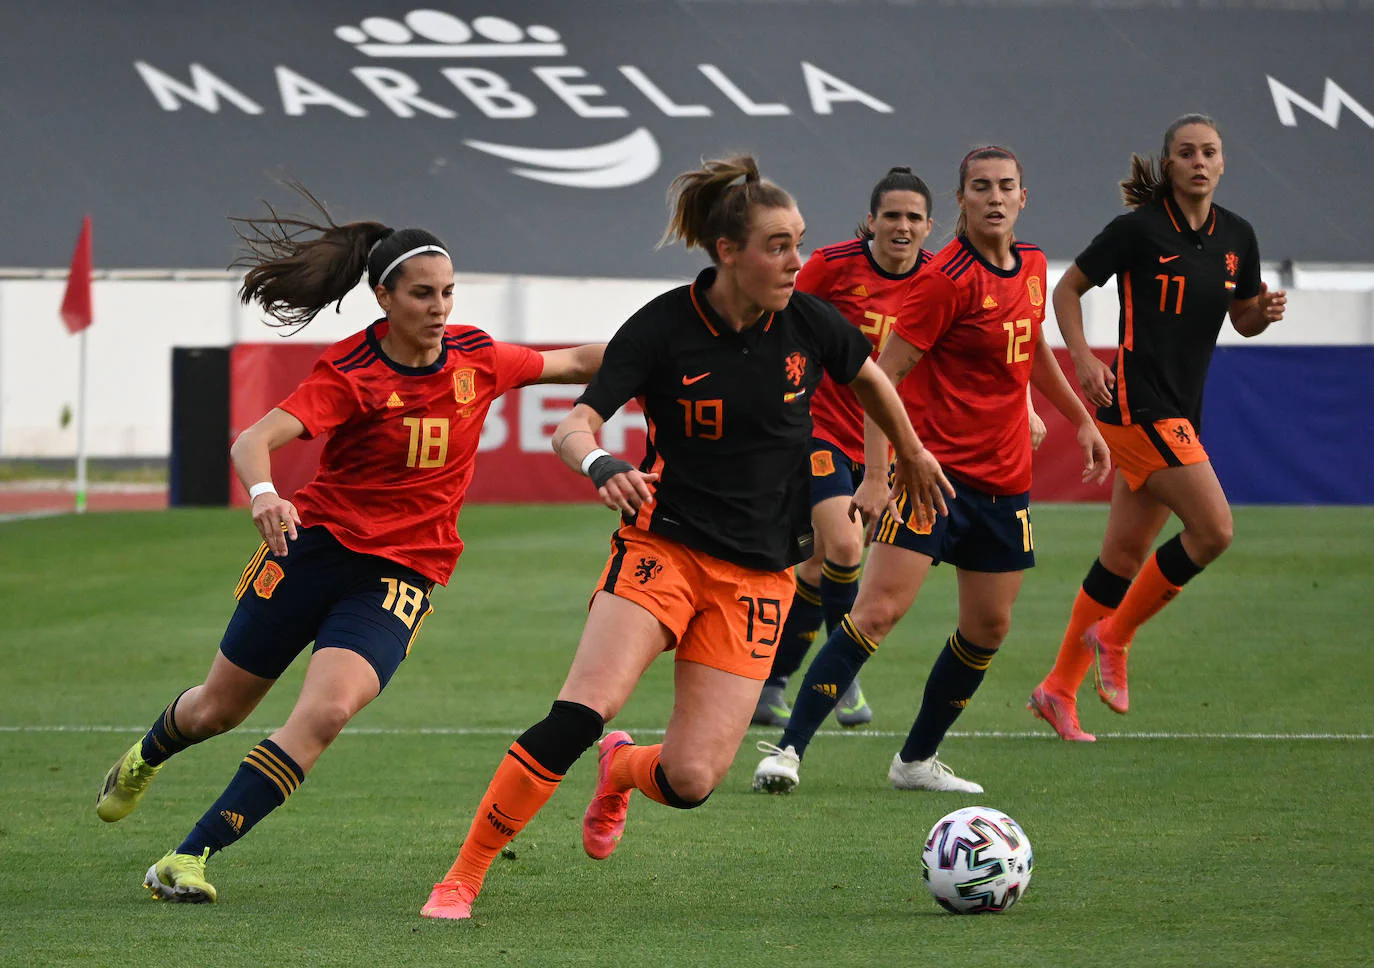 El amistoso entre España y Países Bajos se disputó en el césped del marbellí Antonio Lorenzo Cuevas 